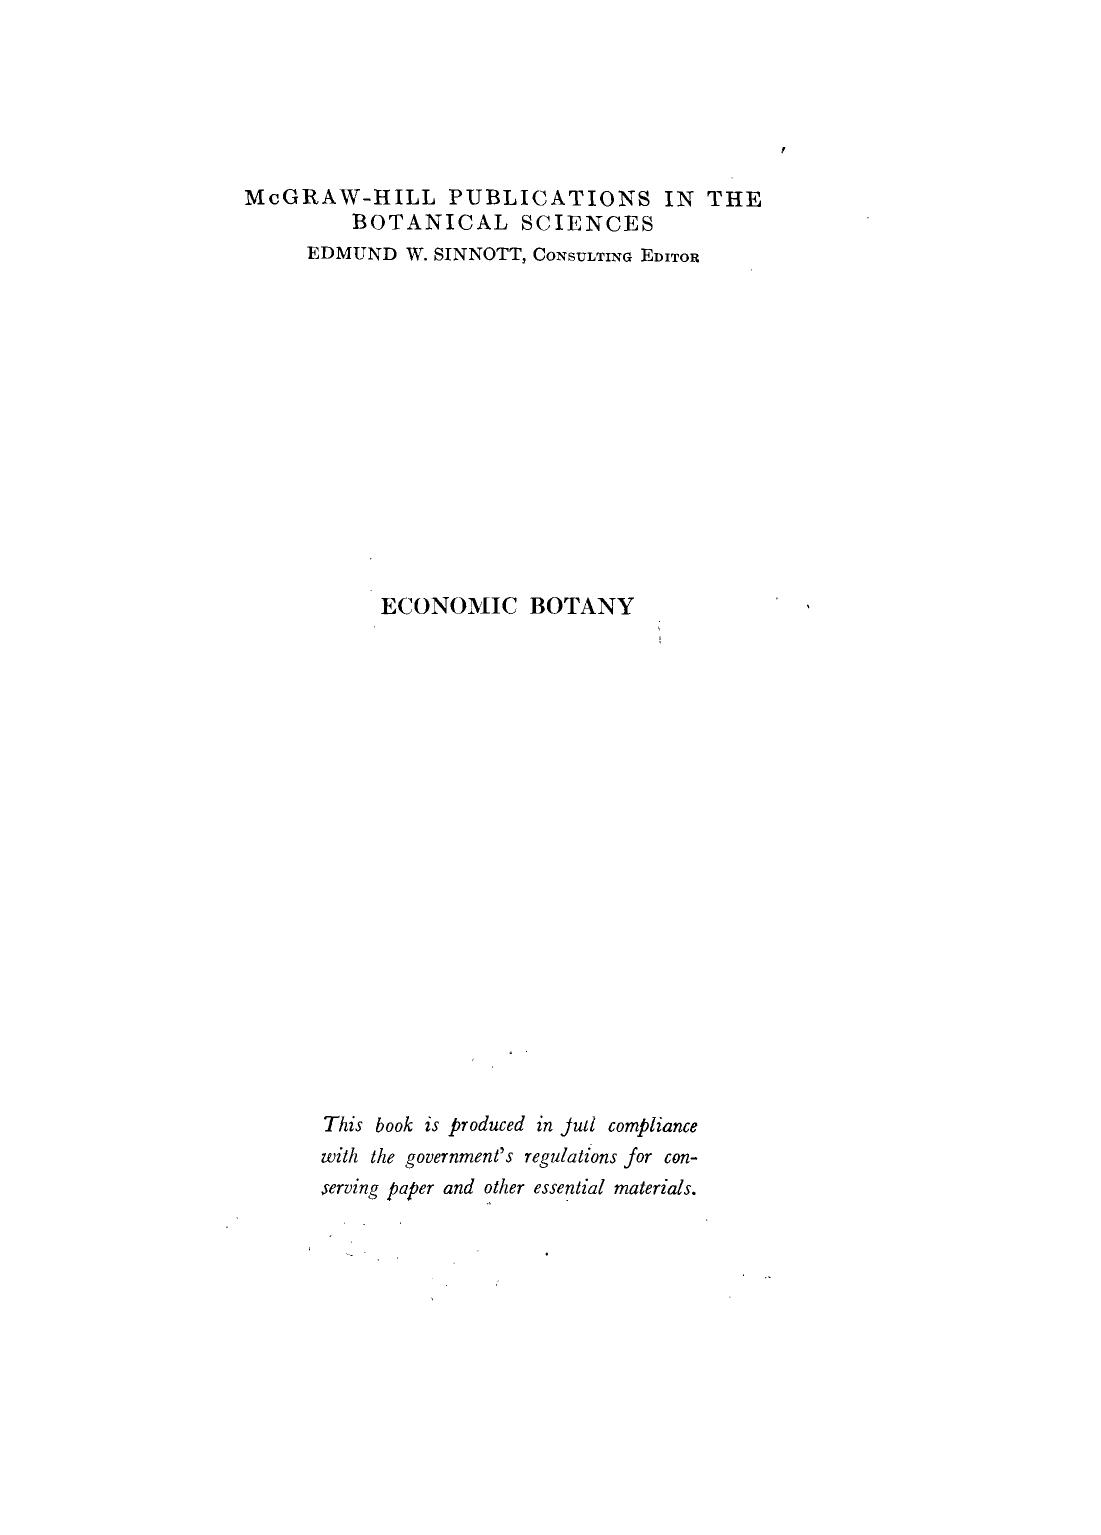 Economic Botany 1937